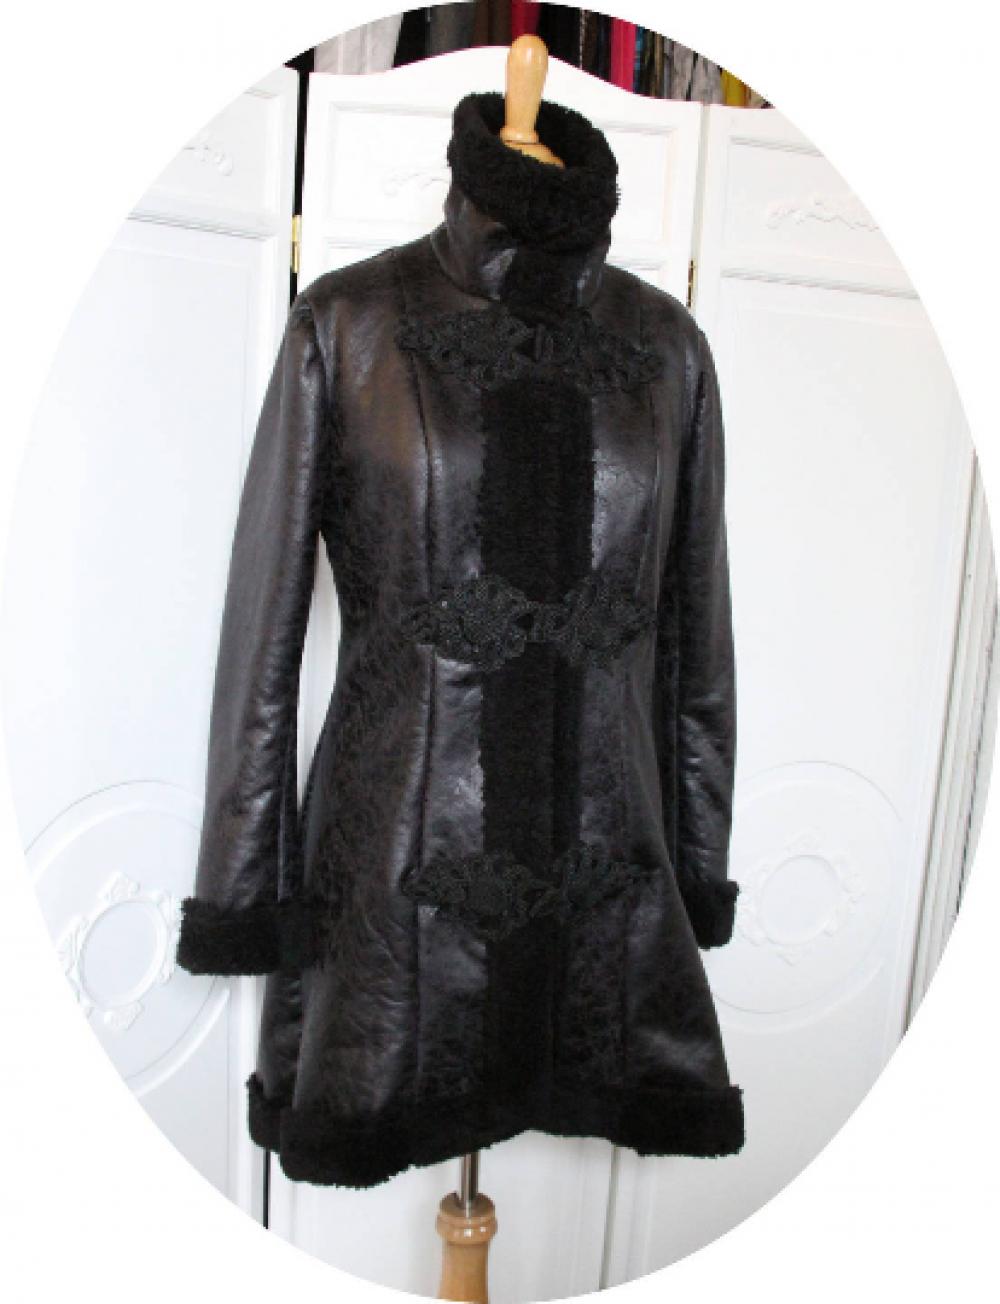 Manteau trois quart cintré et évasé en peau lainée noire avec un coté simili cuir marbré un coté moumoute polaire noire--9995575175622